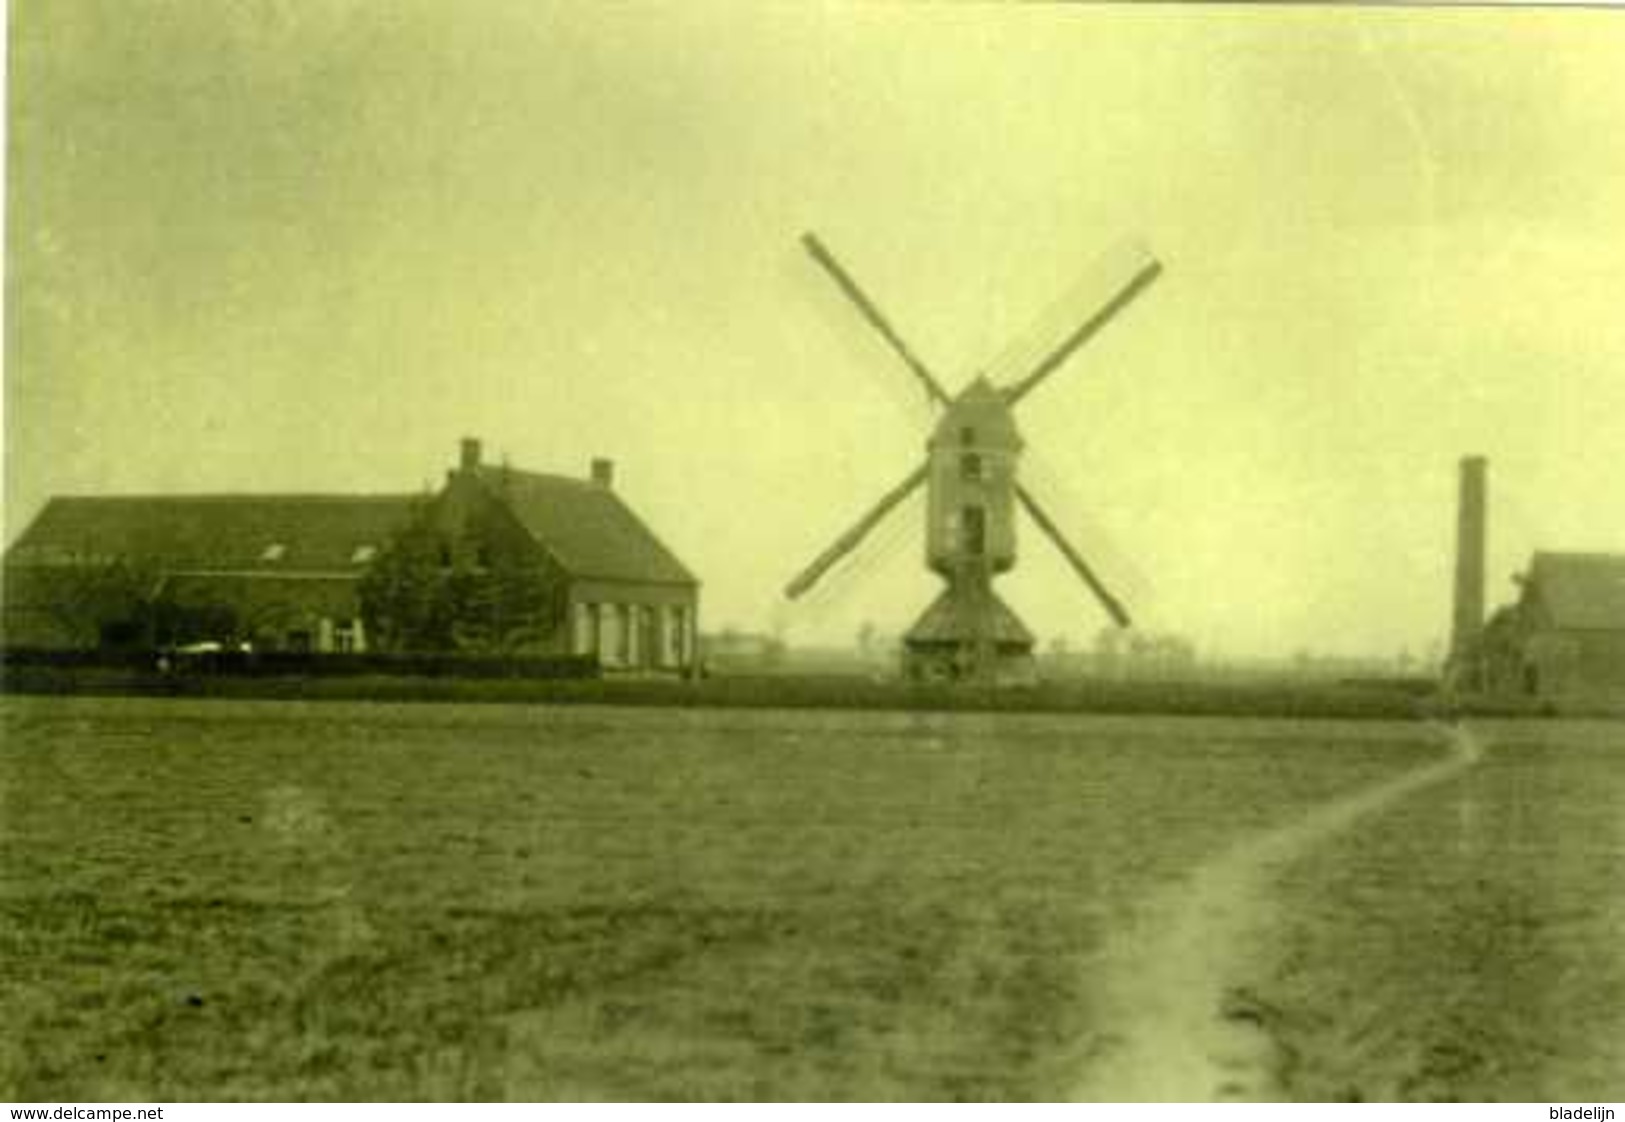 RIJKEVORSEL (Antwerpen) - Molen/moulin - Zeldzame Oude Opname Van De Verdwenen Staakmolen En Stoommaalderij Ca. 1930 - Rijkevorsel